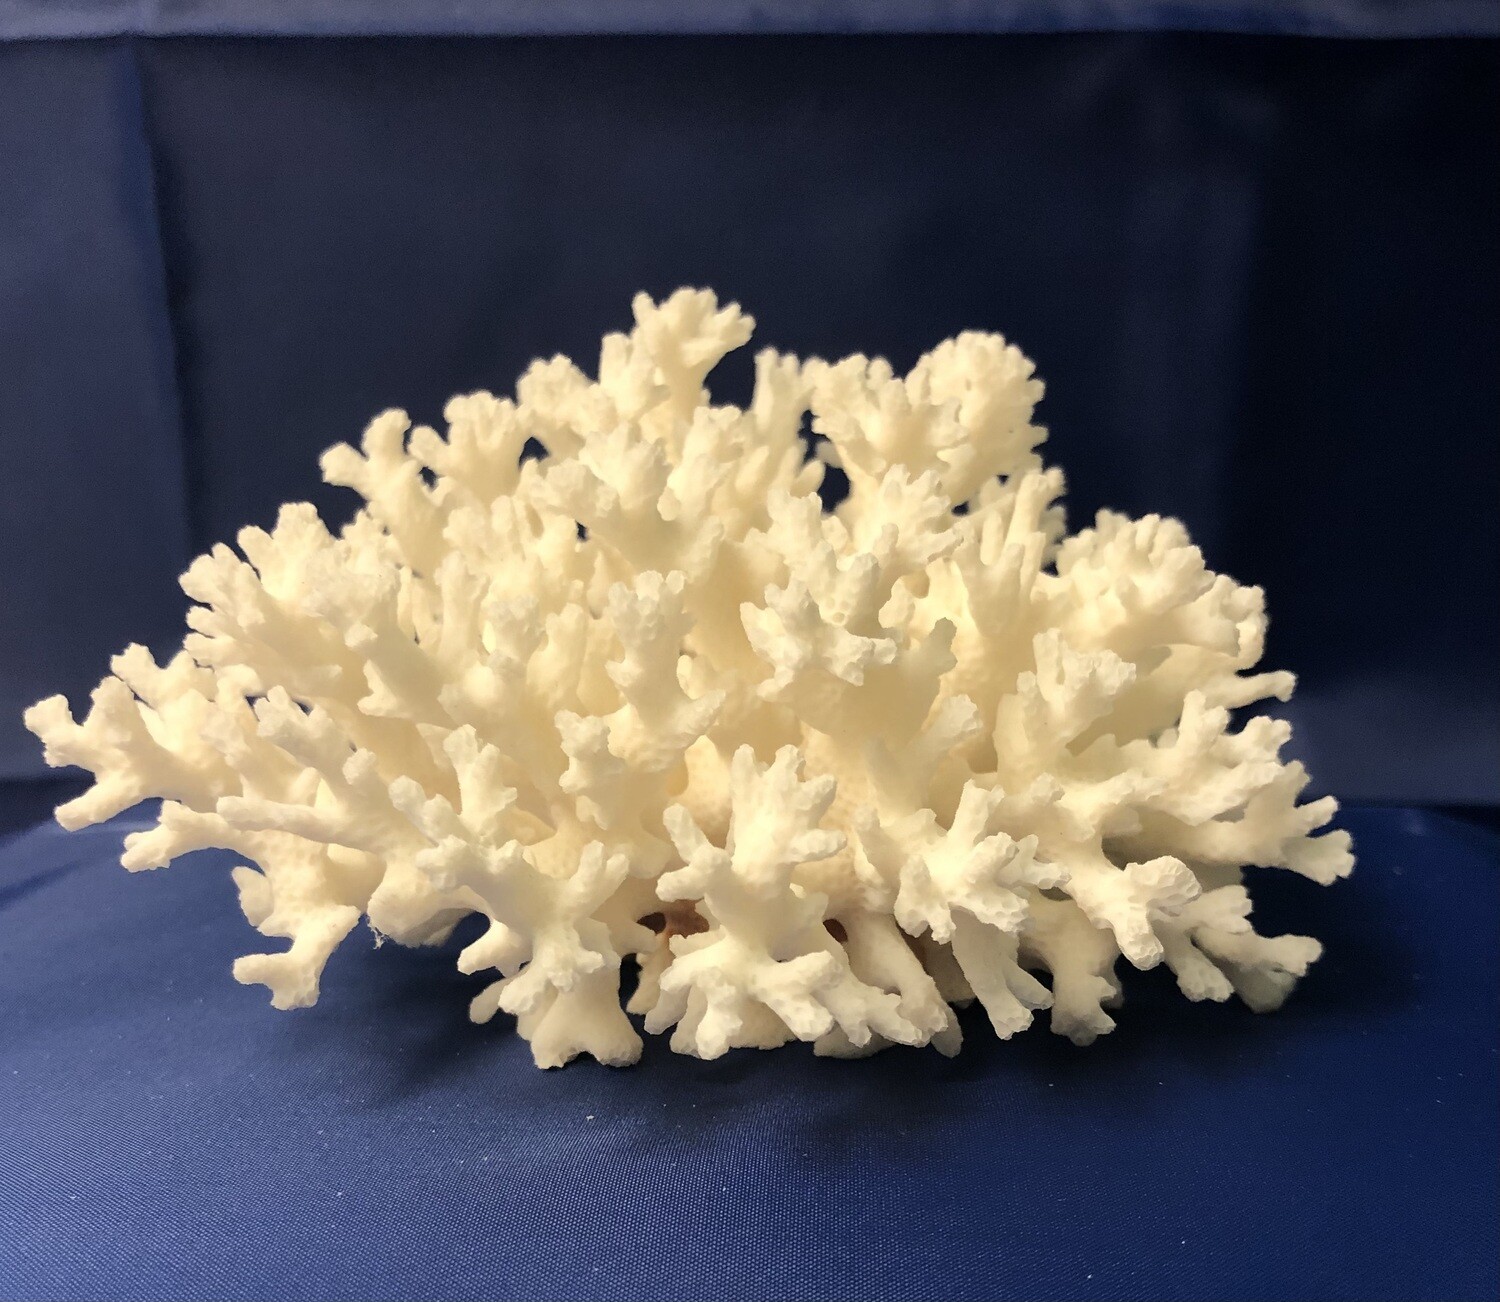 Lace Coral Specimen (5" x 4.5" x 3")